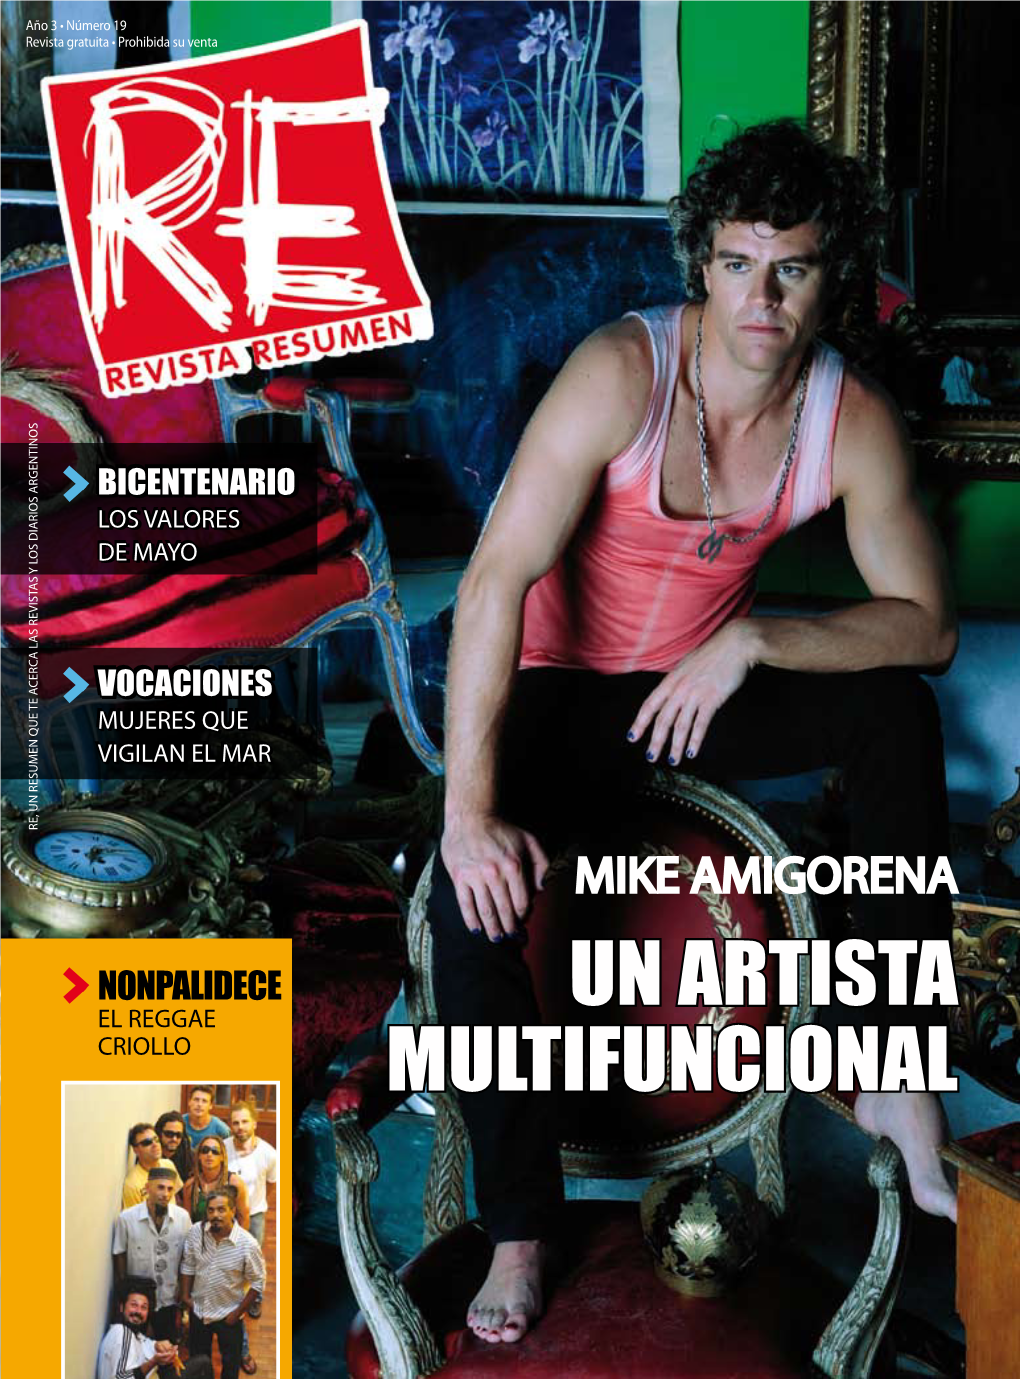 Revista Resumen Año 3 No. 19 Jun 2010